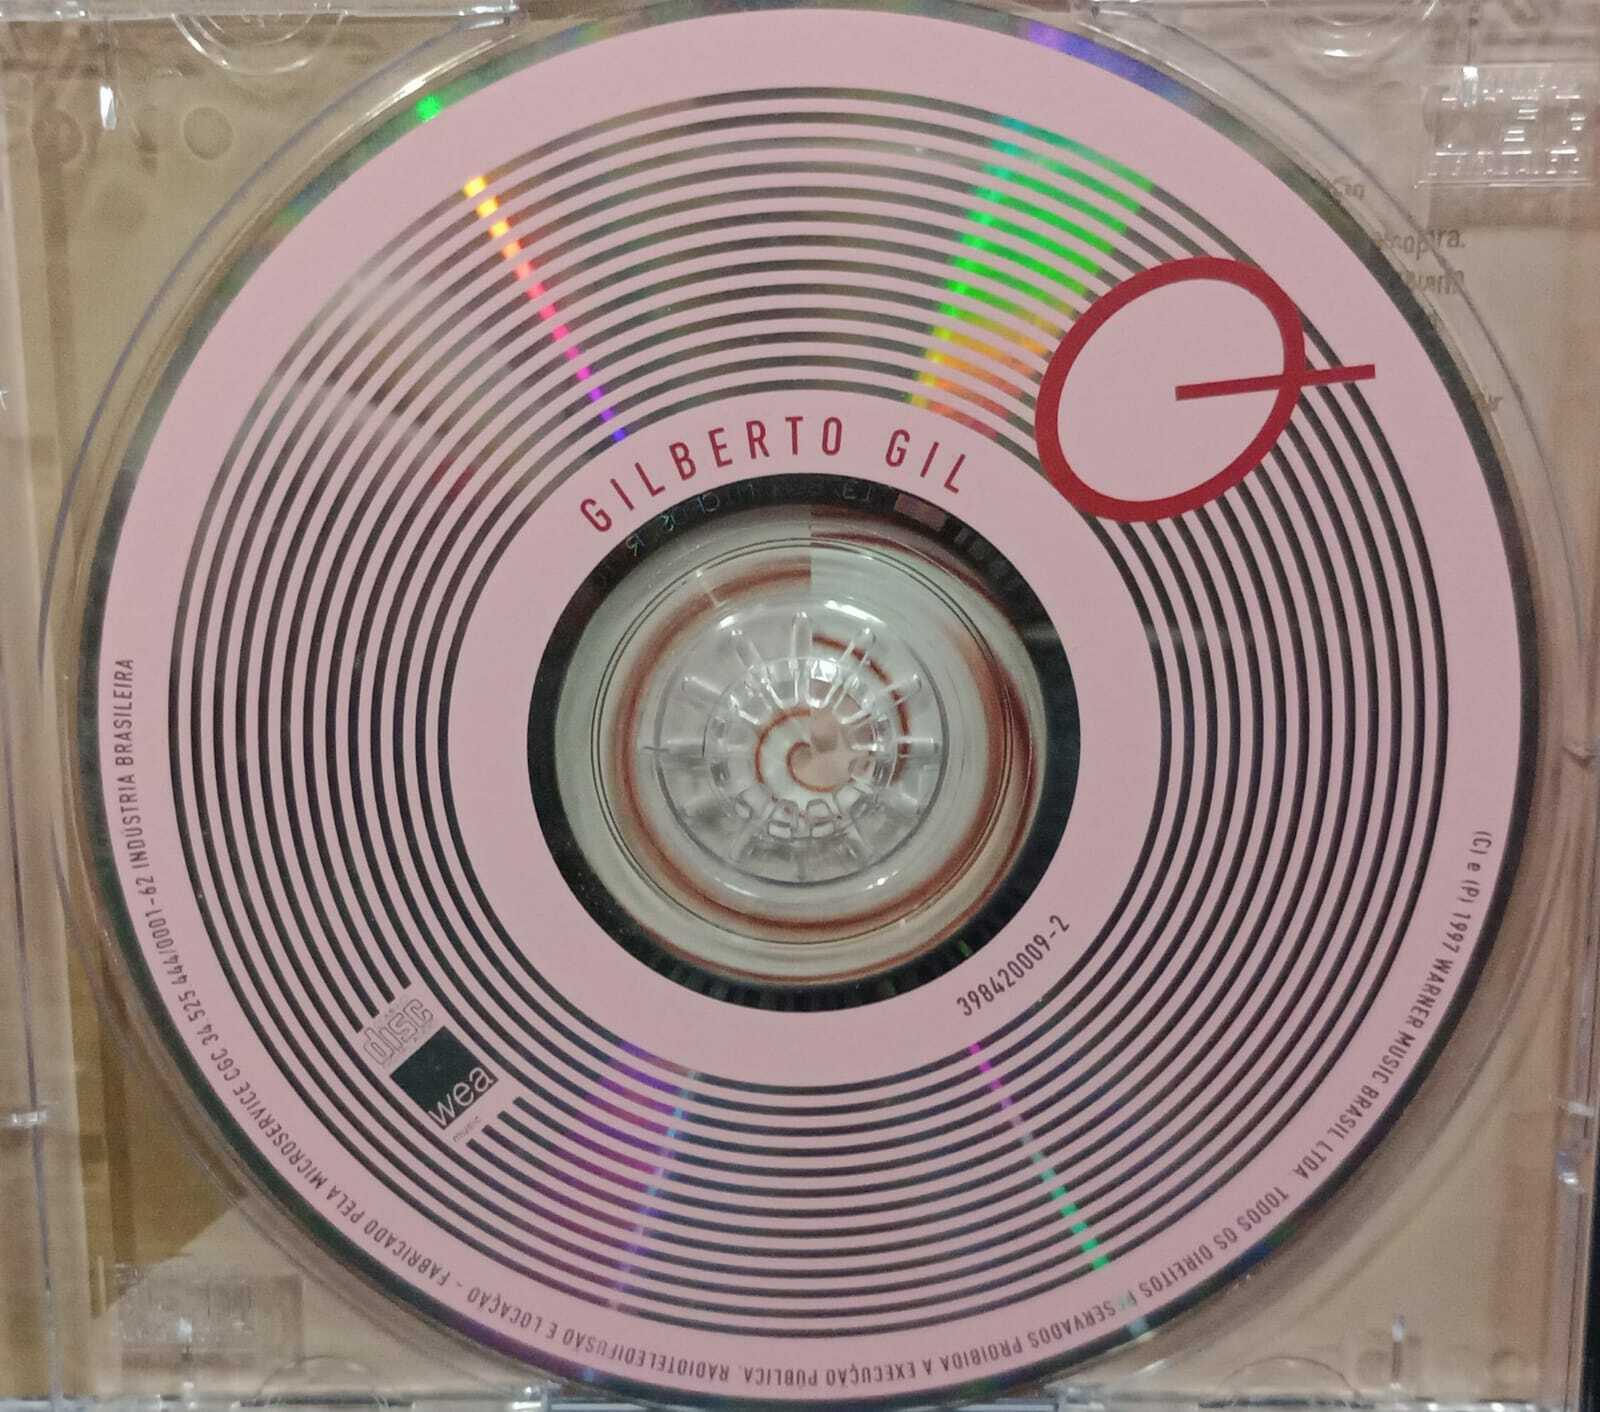 CD - Gilberto Gil - Quanta